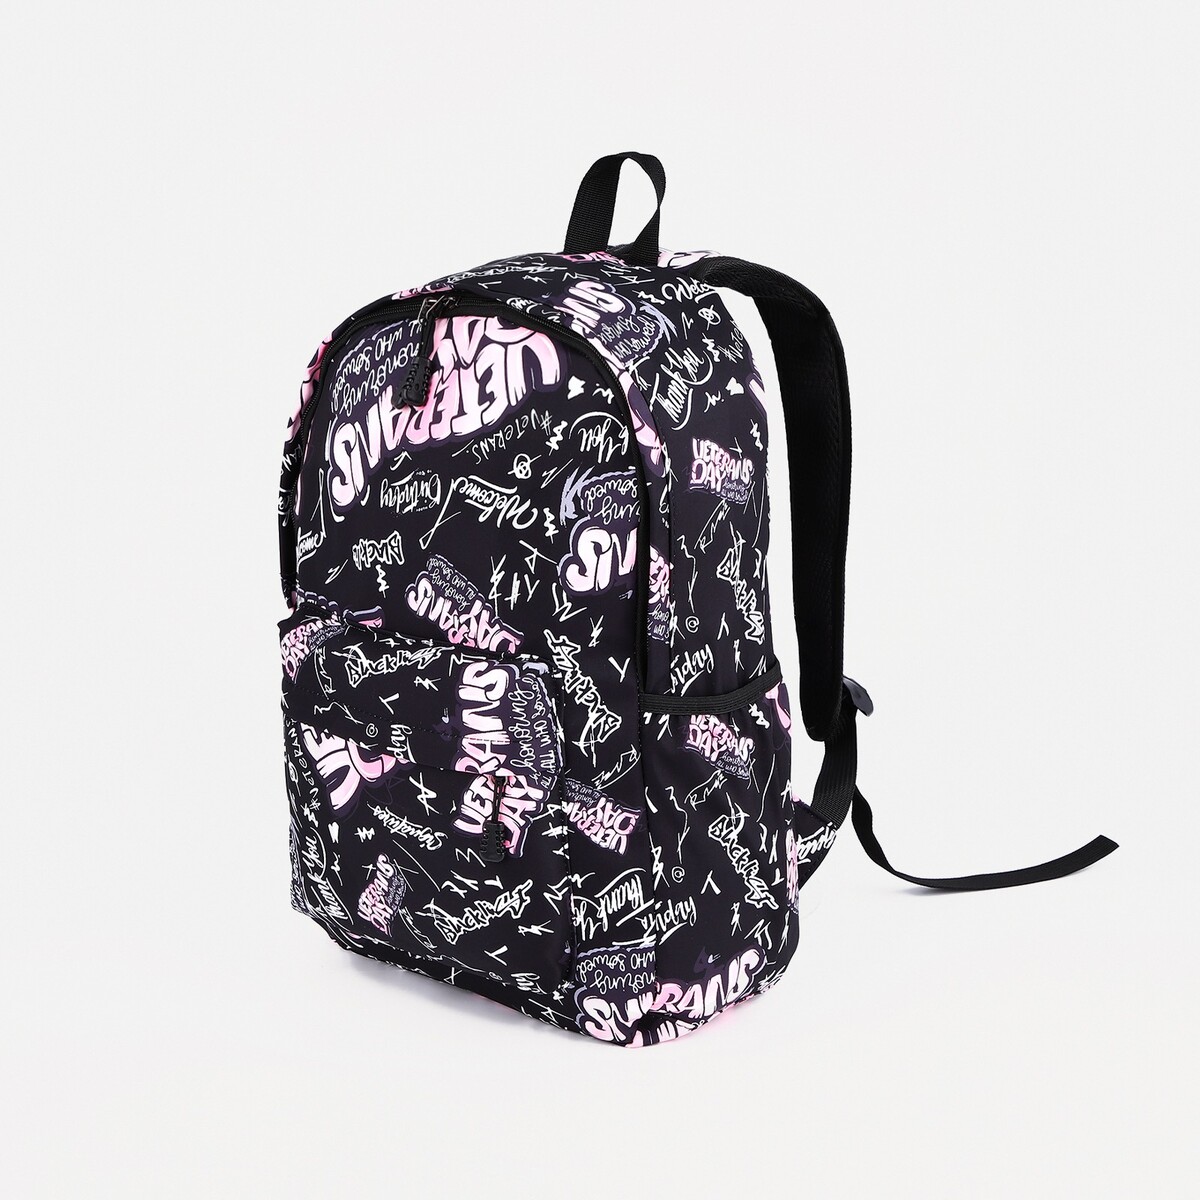 Рюкзак на молнии, 3 наружных кармана, цвет розовый/черный рюкзак сумка на молнии 4 наружных кармана отделение для обуви розовый